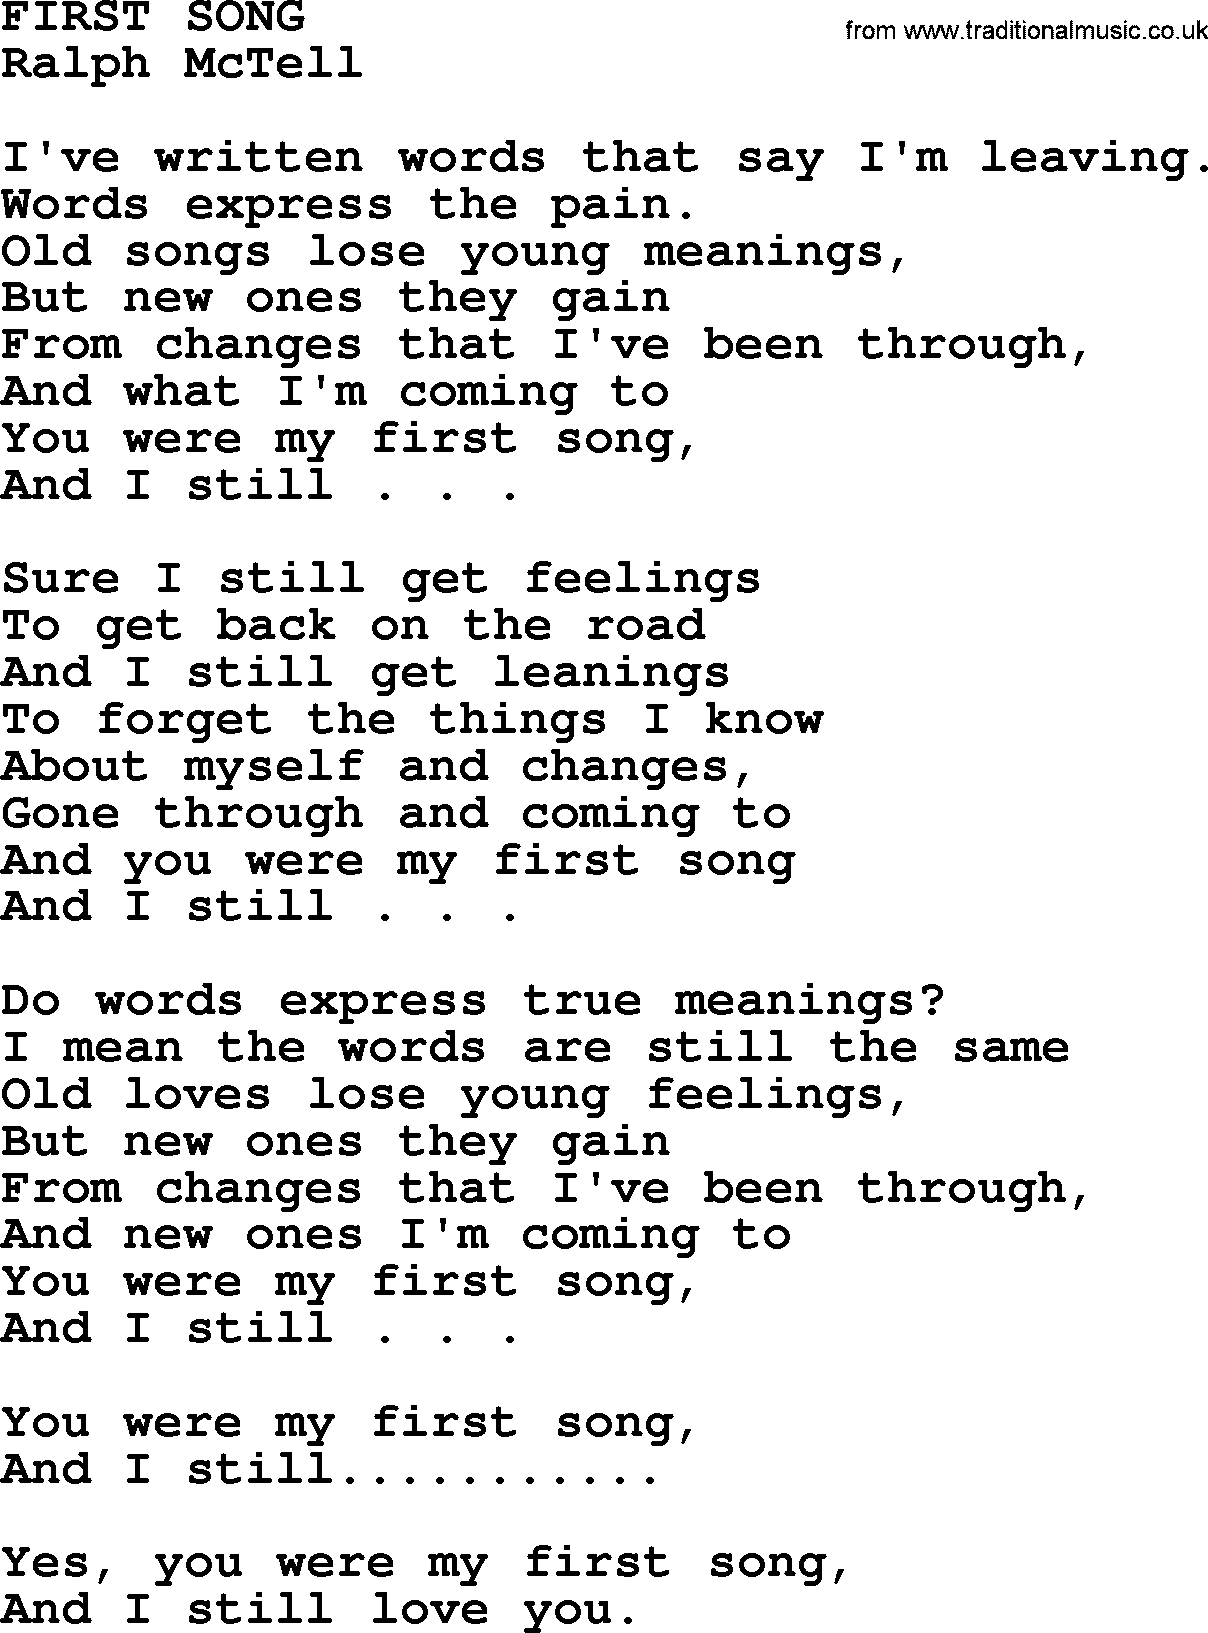 Ralph McTell Song: First Song, lyrics